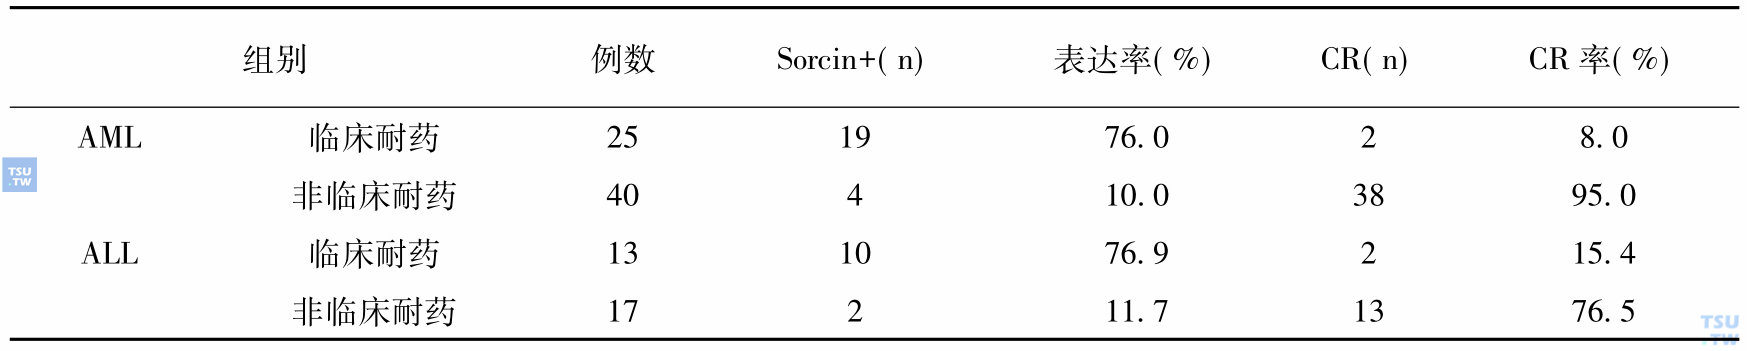 白血病sorcin基因表达与临床耐药的关系